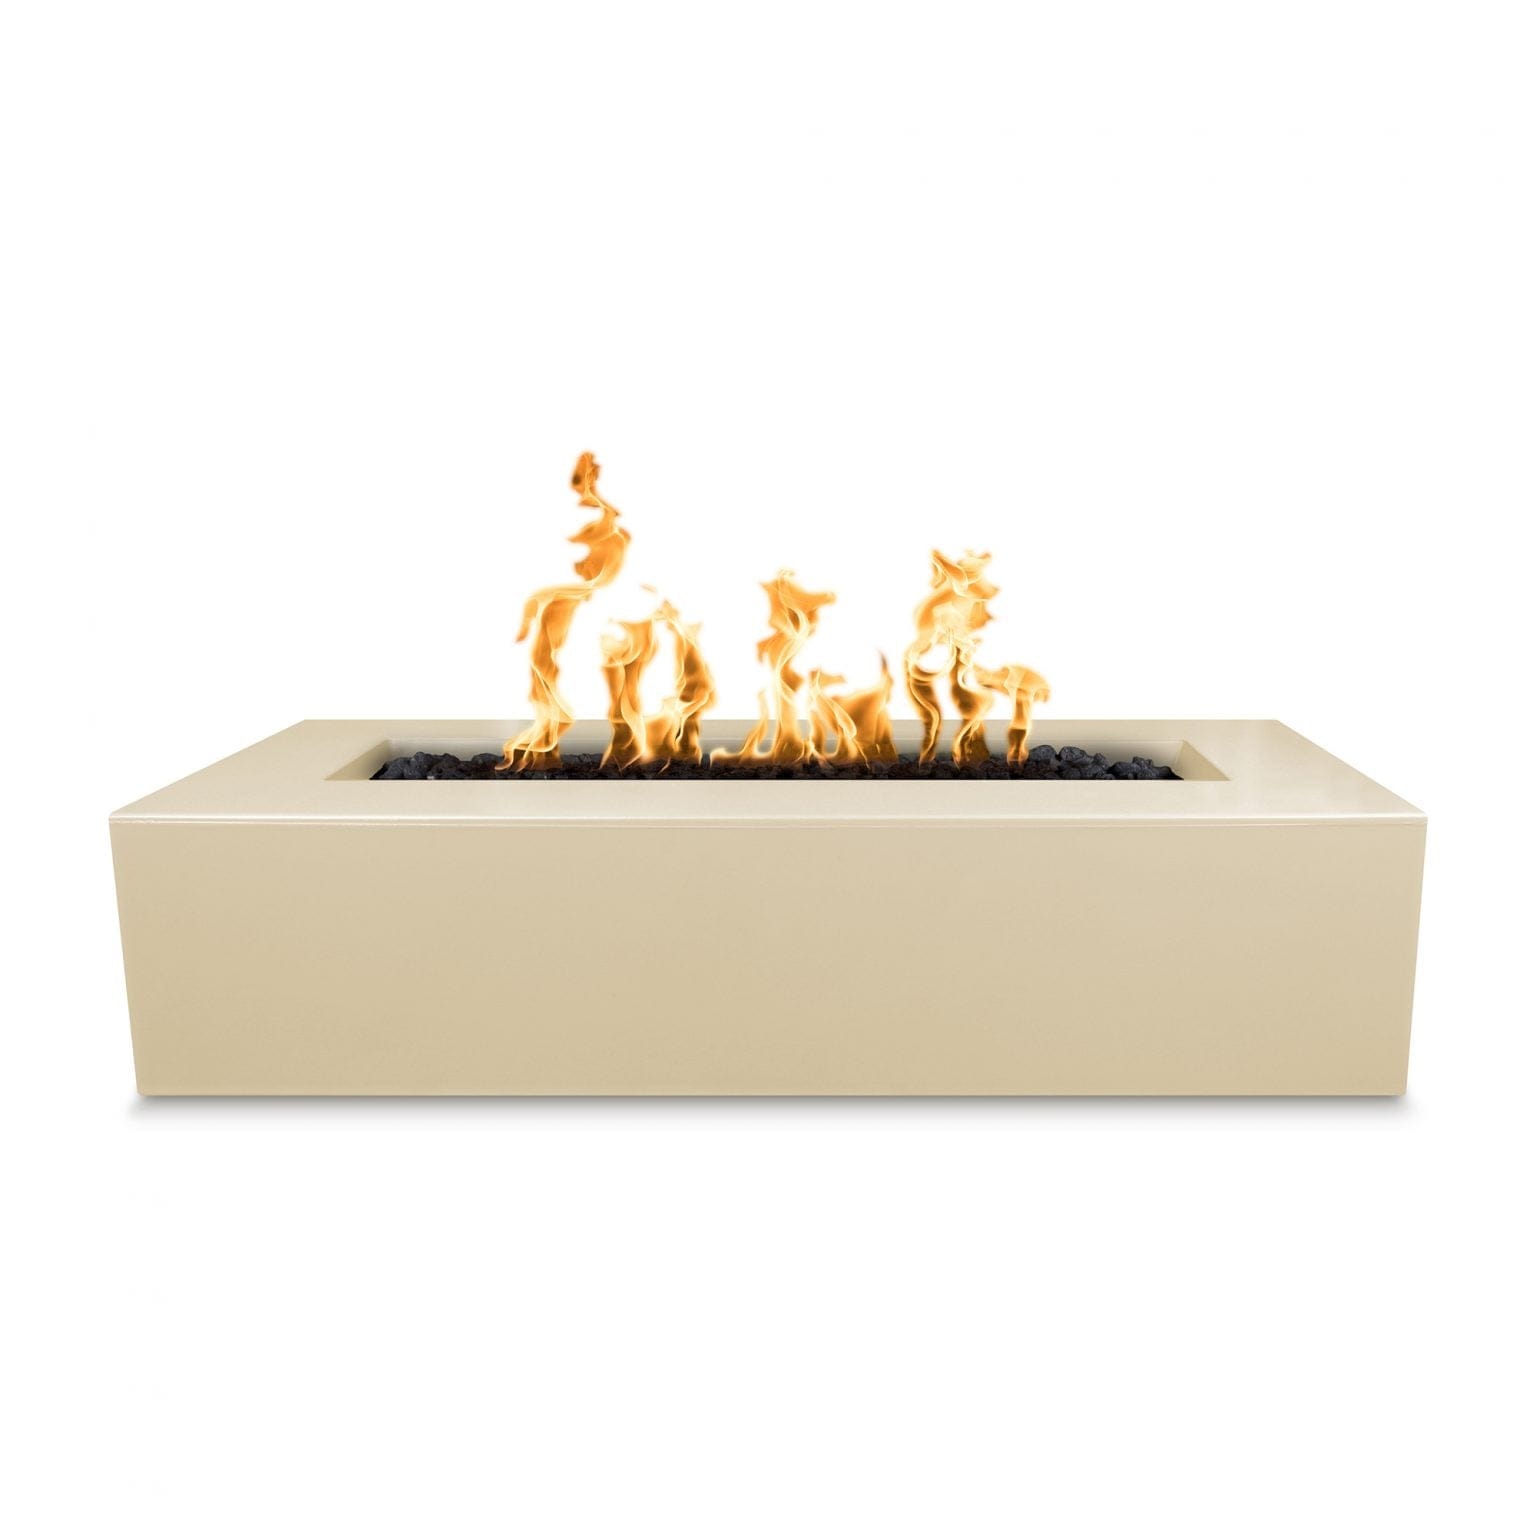 The Outdoor Plus Fire Pit 54" / Match Lit The Outdoor Plus Regal Linear Fire Pit | GFRC Concrete OPT-RGL54